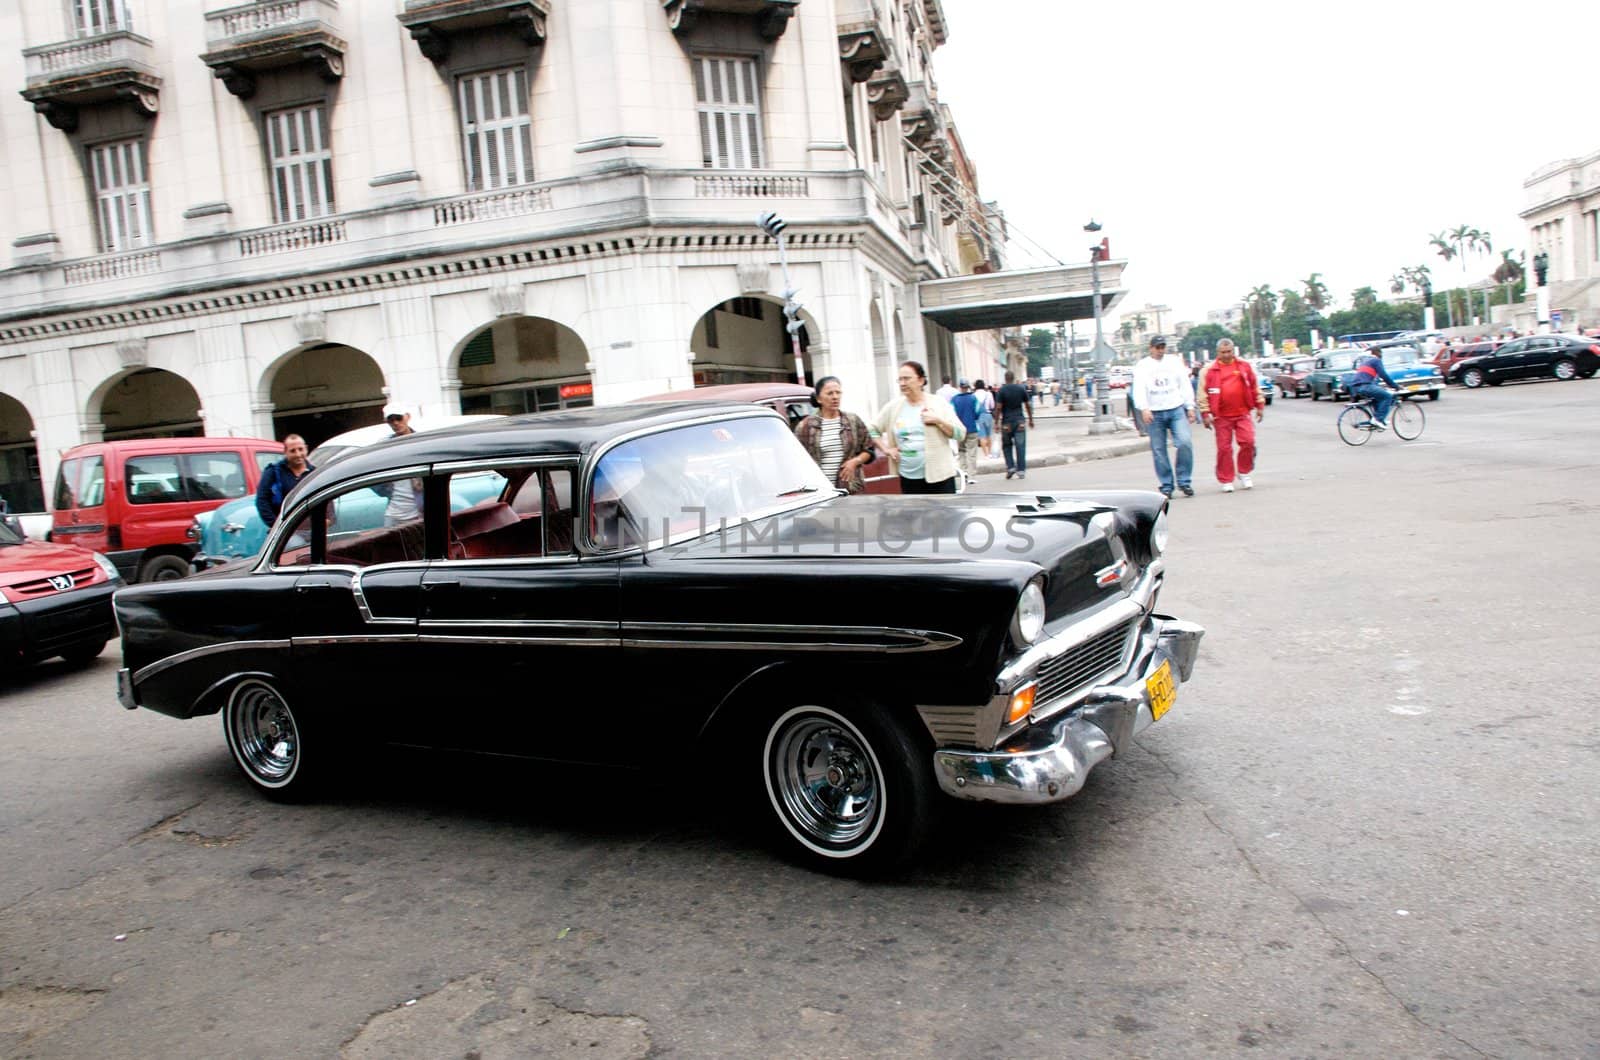 Street scenes of Havana, Cuba